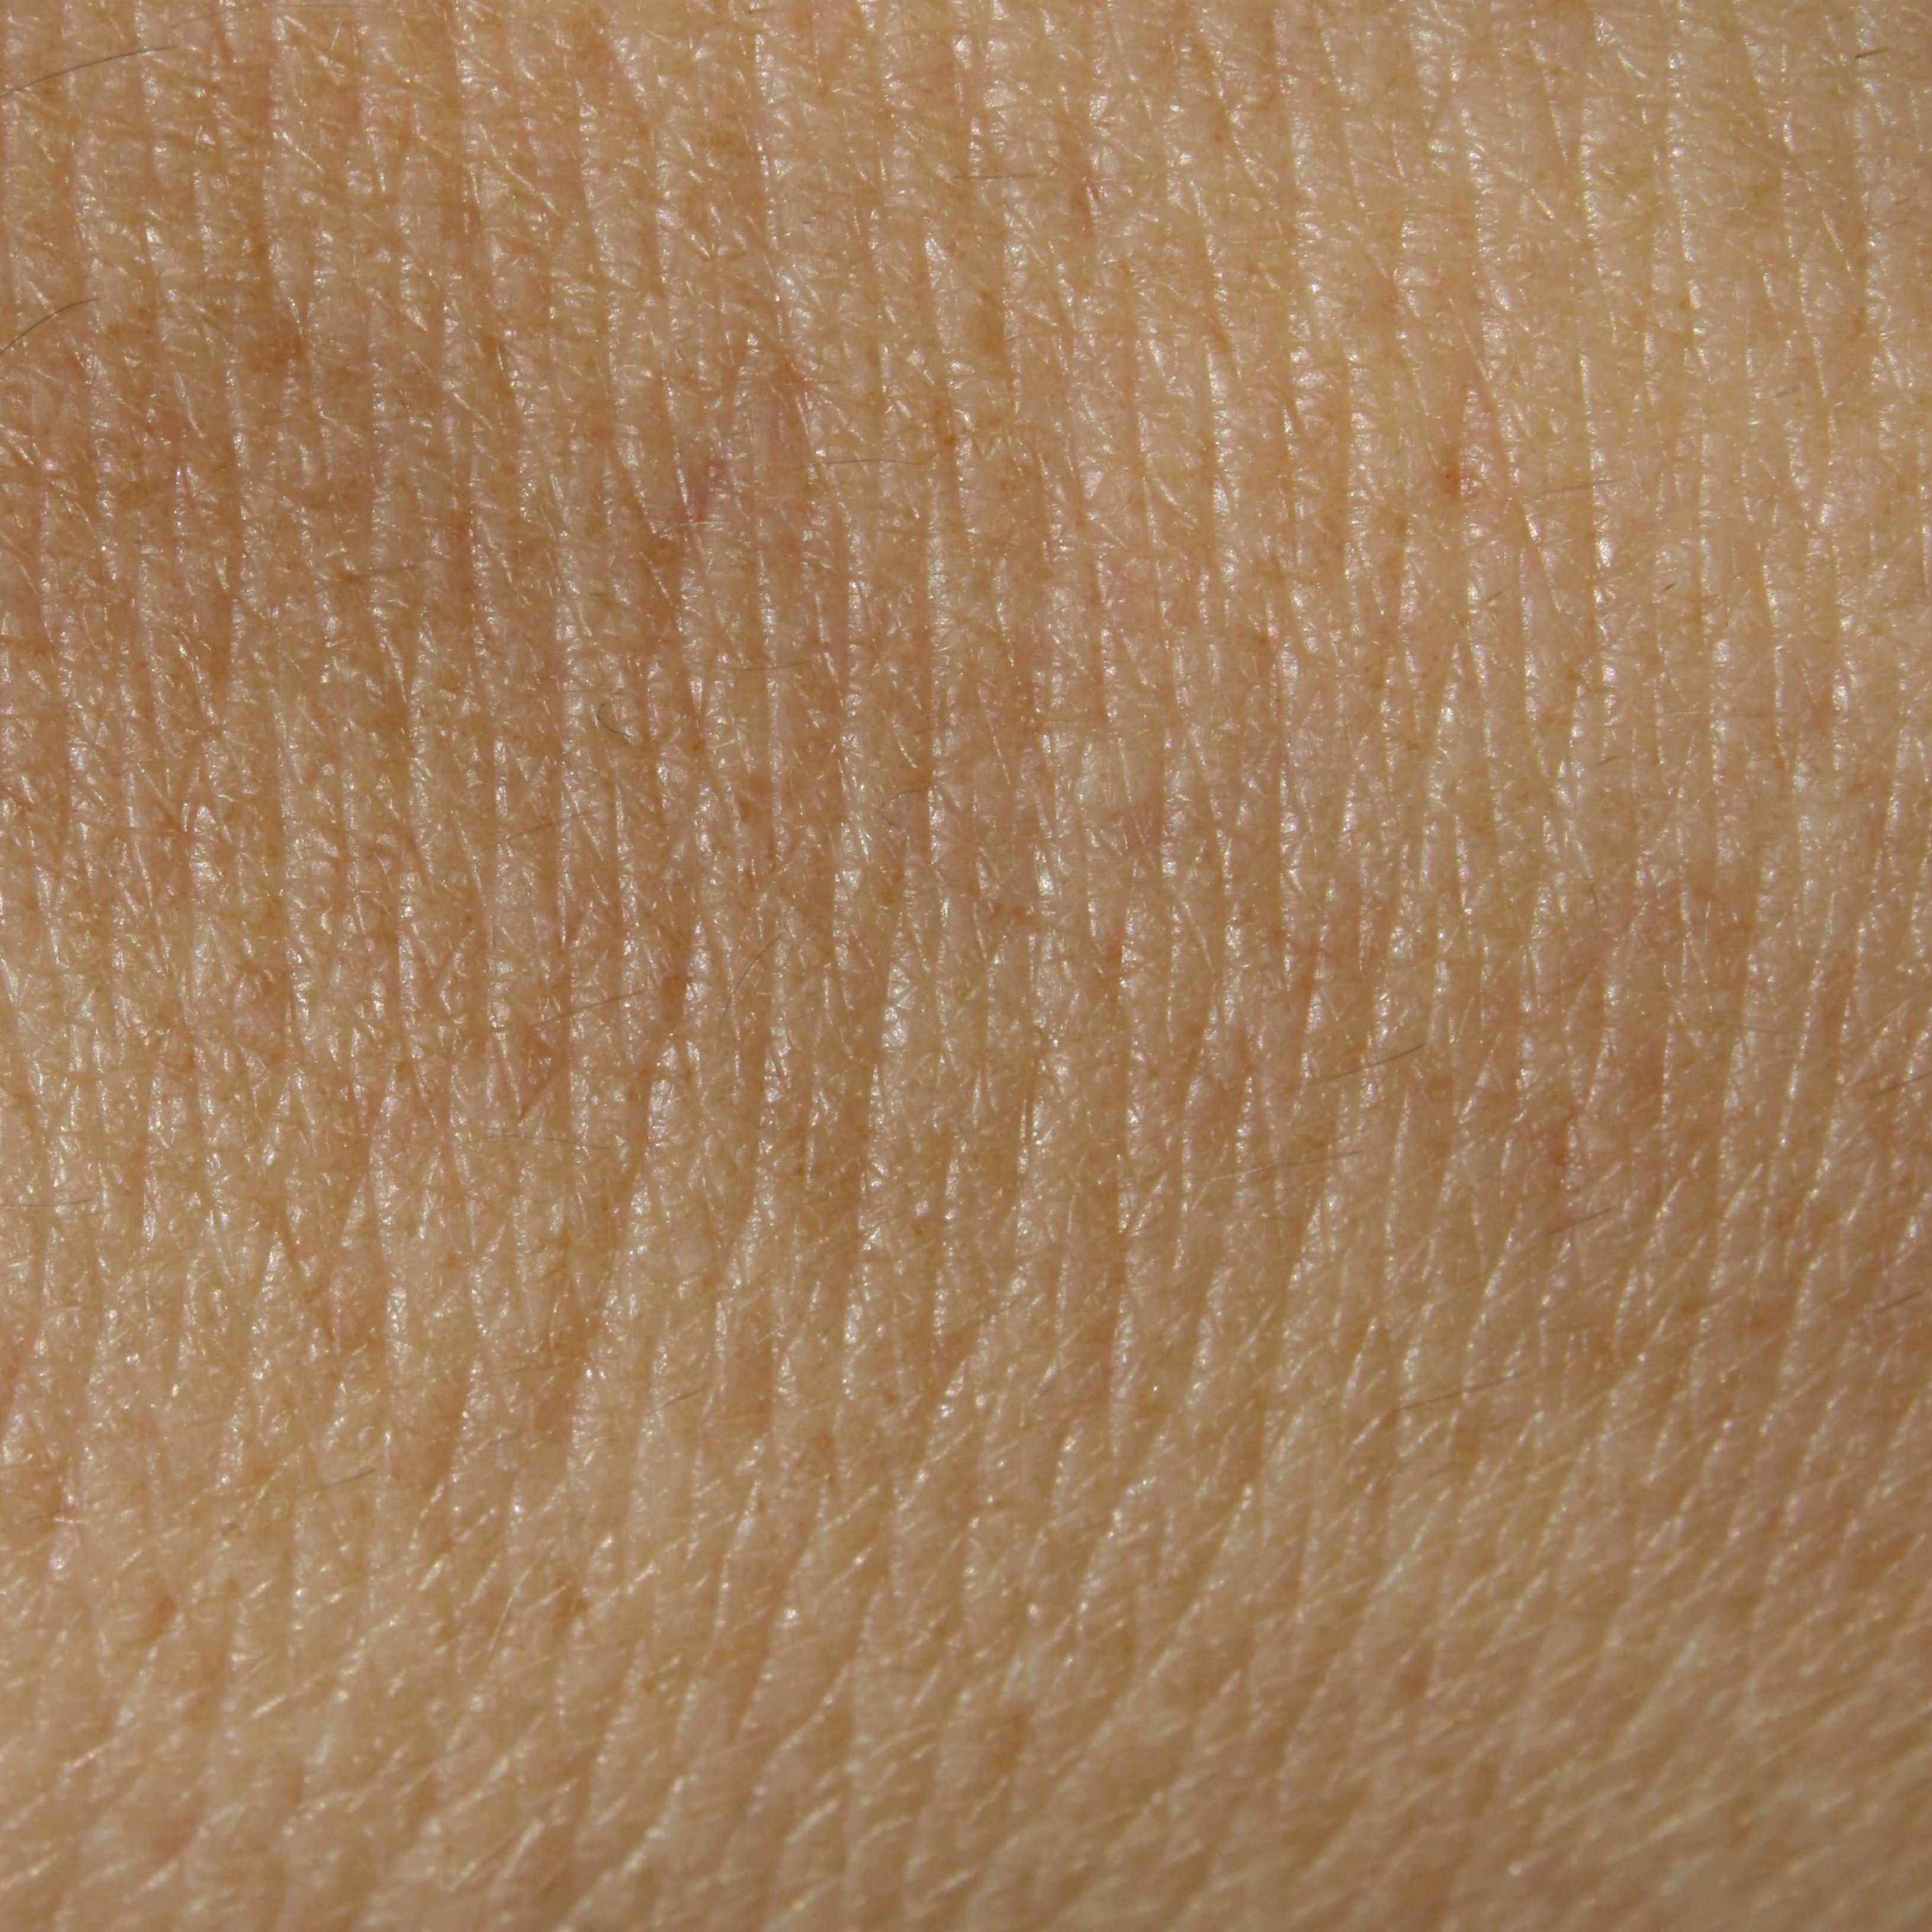 Cinc símptomes que mostren que pots tenir la pell "estressada"